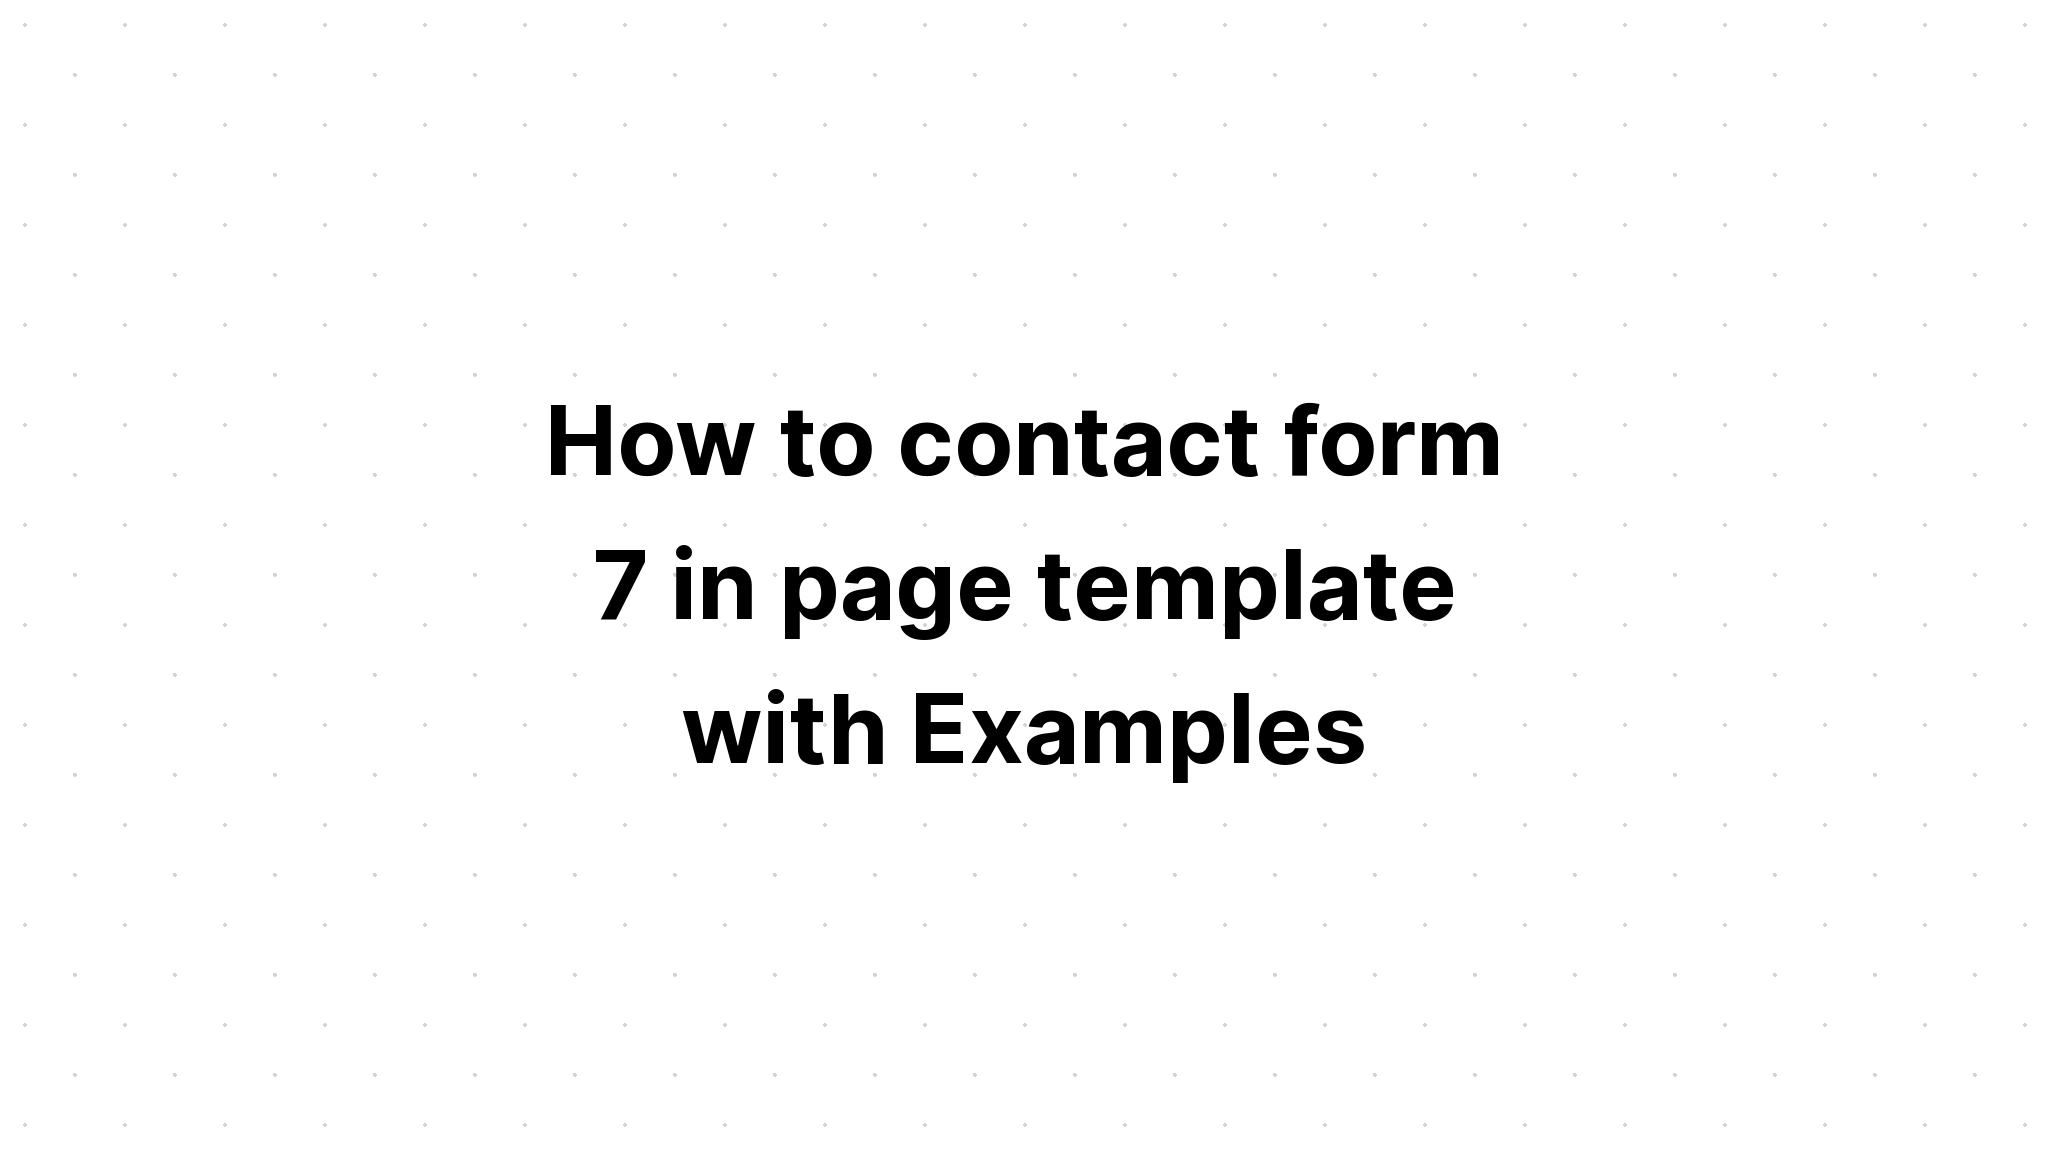 Cách liên hệ với biểu mẫu 7 trong mẫu trang với các ví dụ